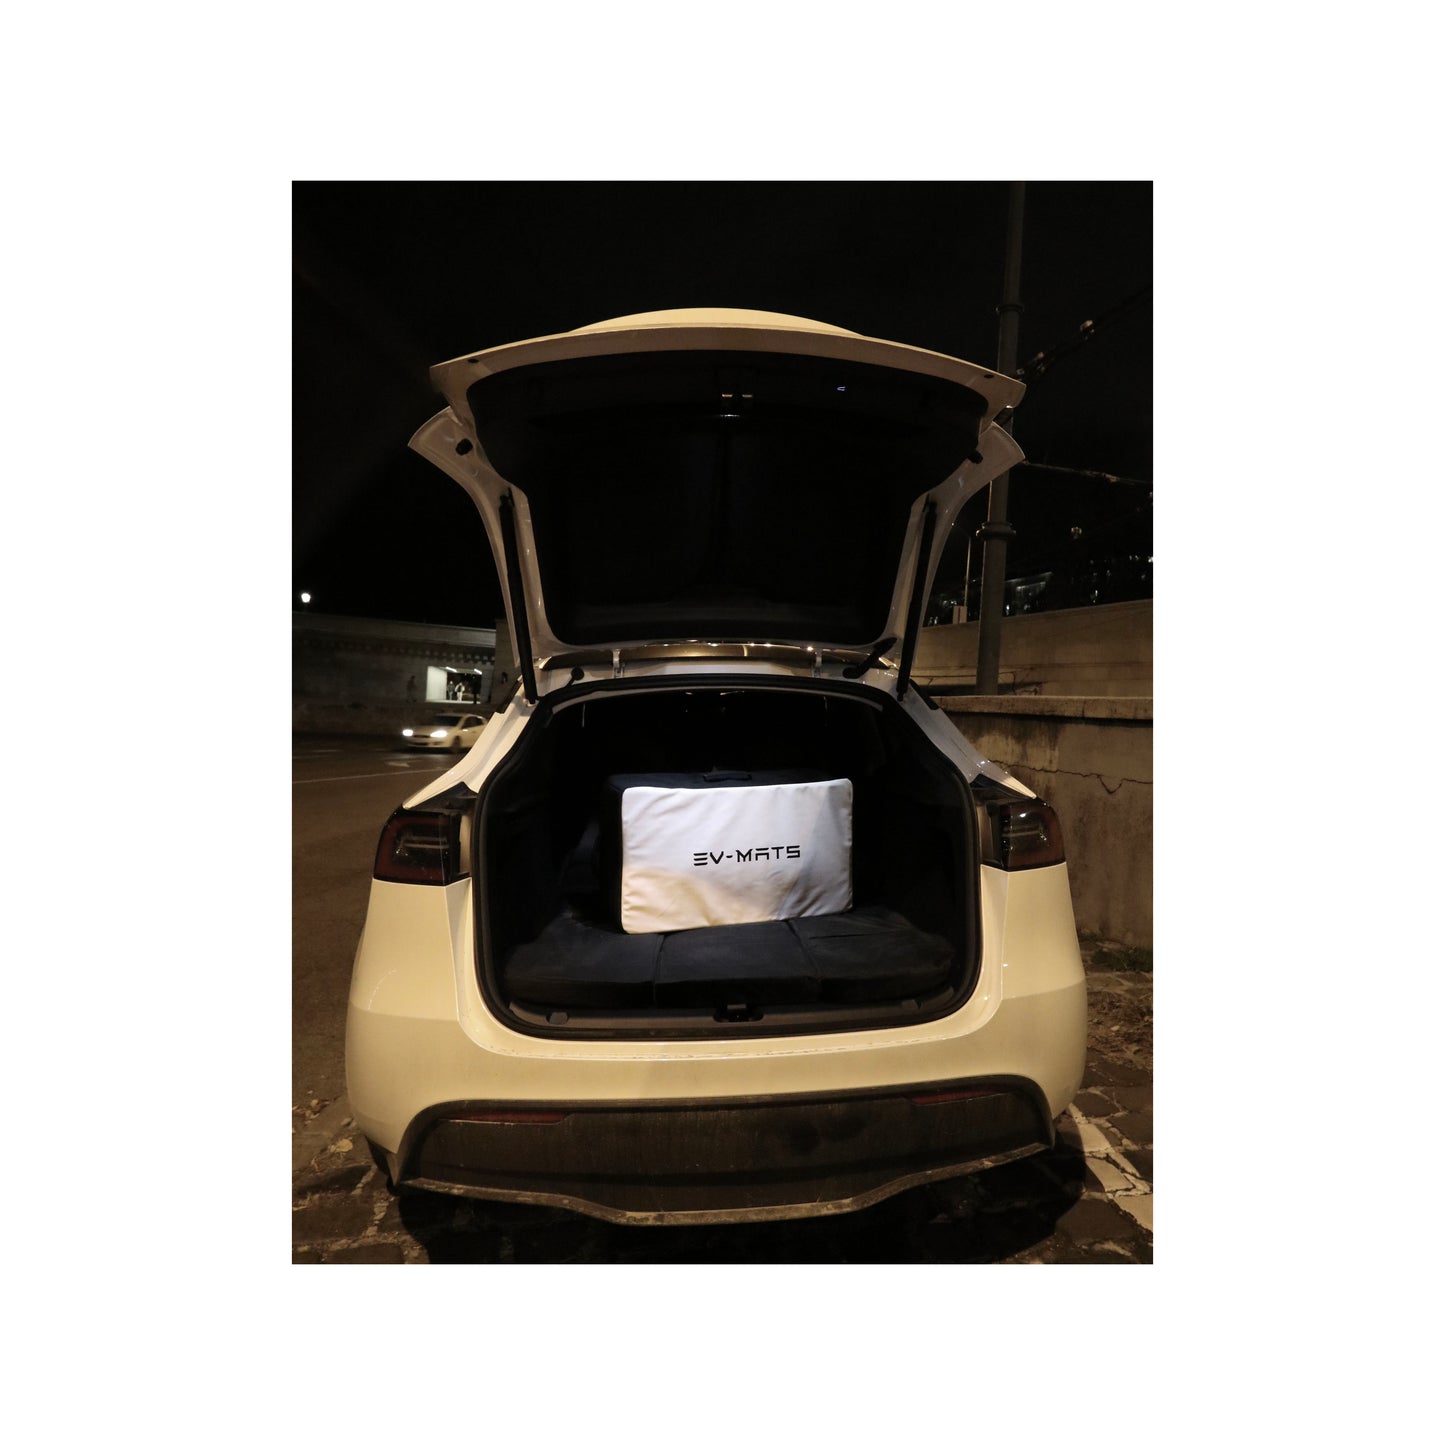 Colchón EV-MATS Tesla Model Y y la bolsa de transporte es un colchón premium de espuma viscoelástica, se ajusta perfectamente a las dimensiones del Tesla Model Y, proporciona una comodidad perfecta para dormir y se puede almacenar en el maletero.